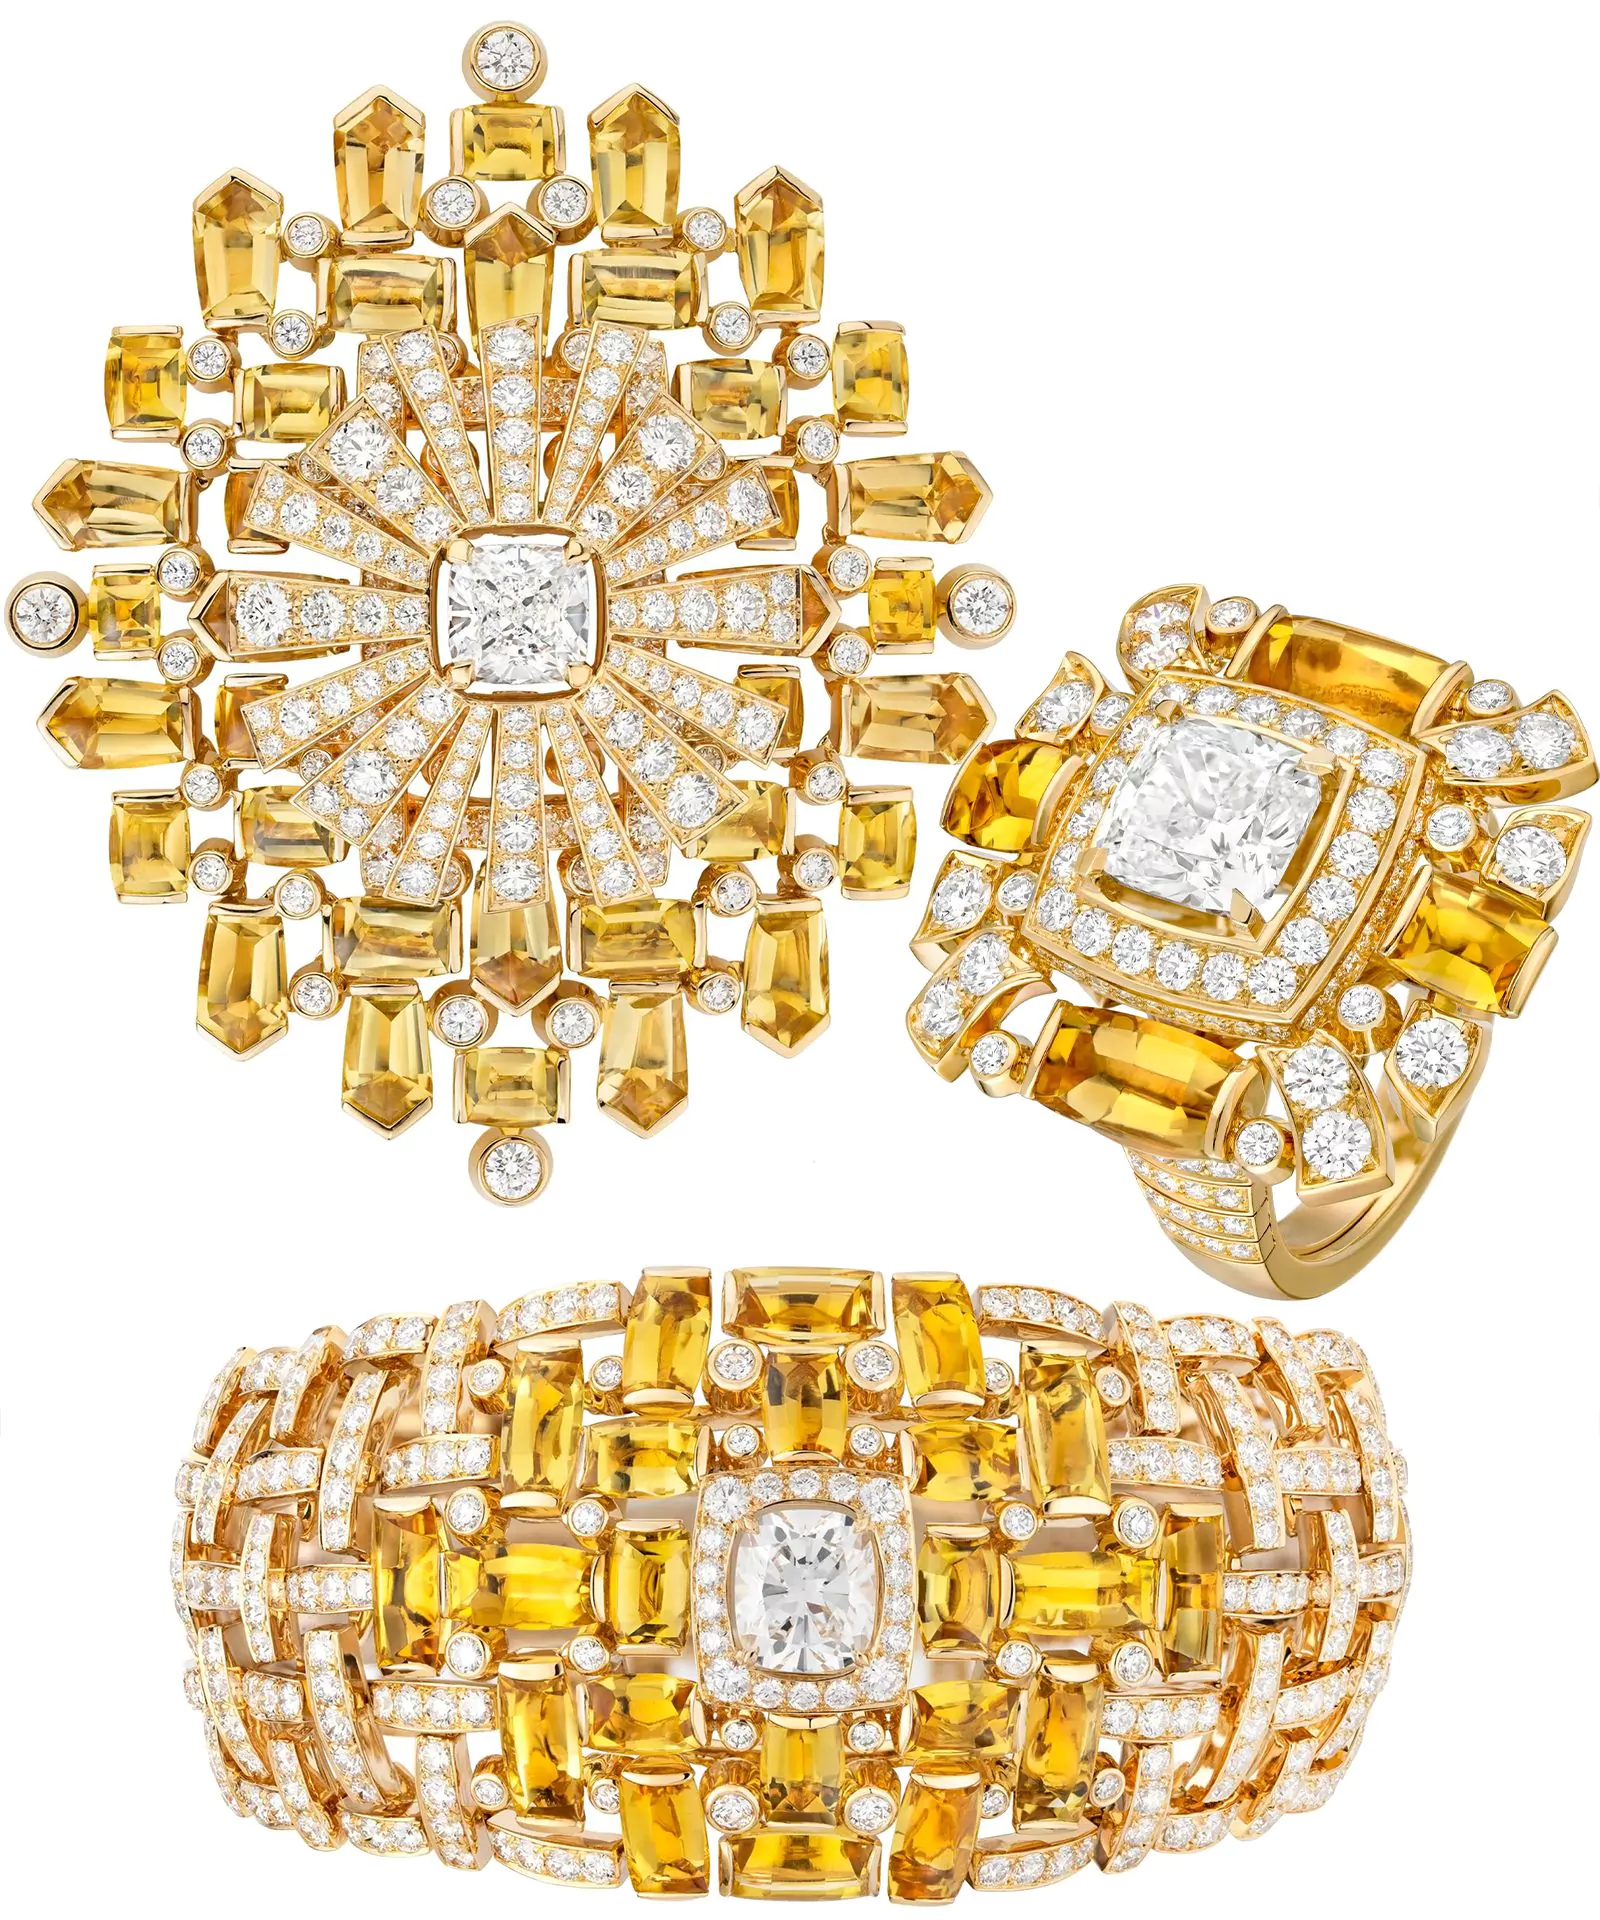 Брошь, кольцо, браслет Tweed Soleil из коллекции Tweed de Chanel